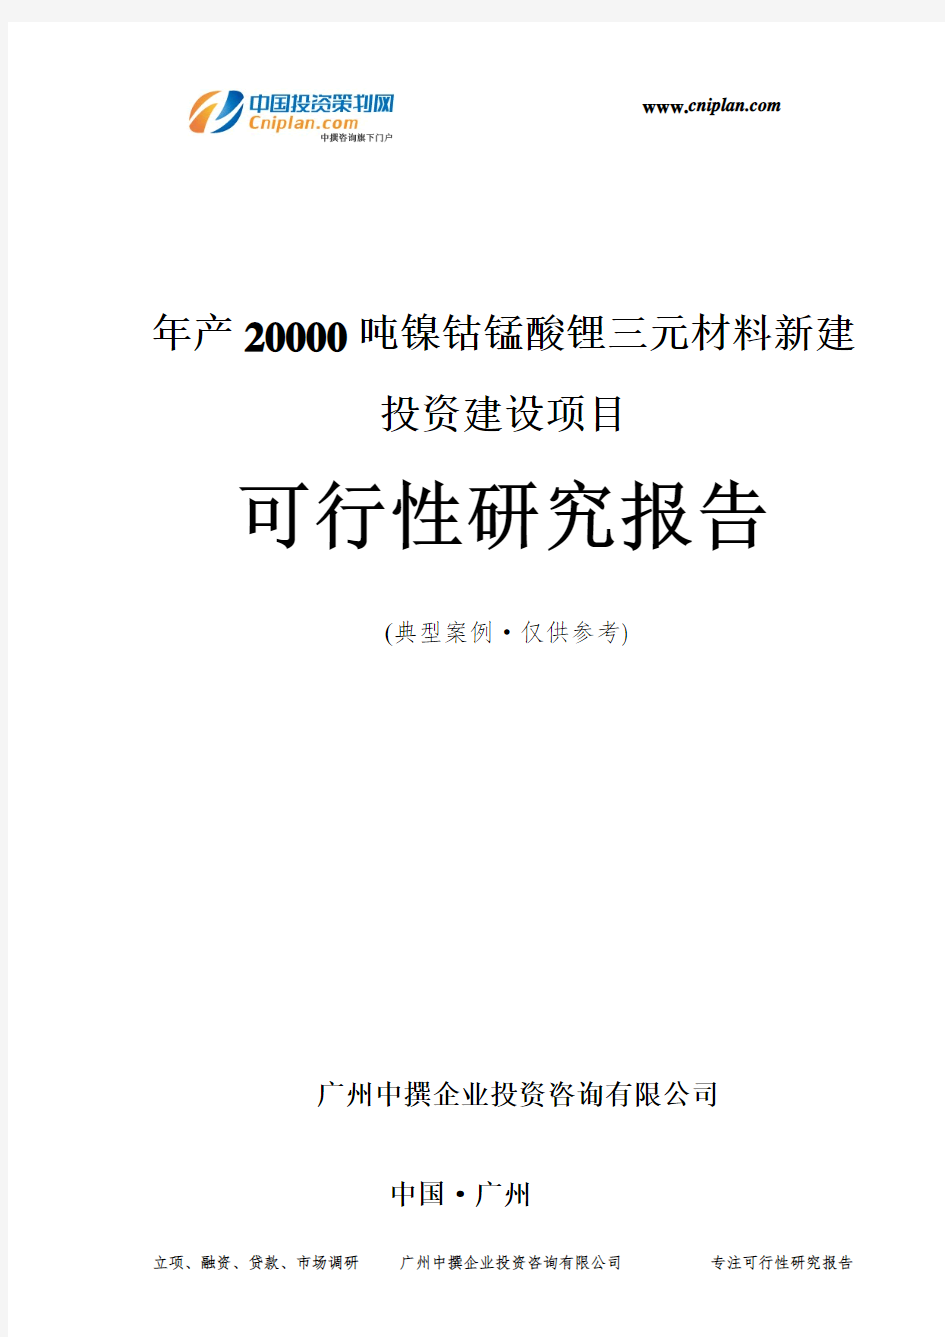 年产20000吨镍钴锰酸锂三元材料新建投资建设项目可行性研究报告-广州中撰咨询